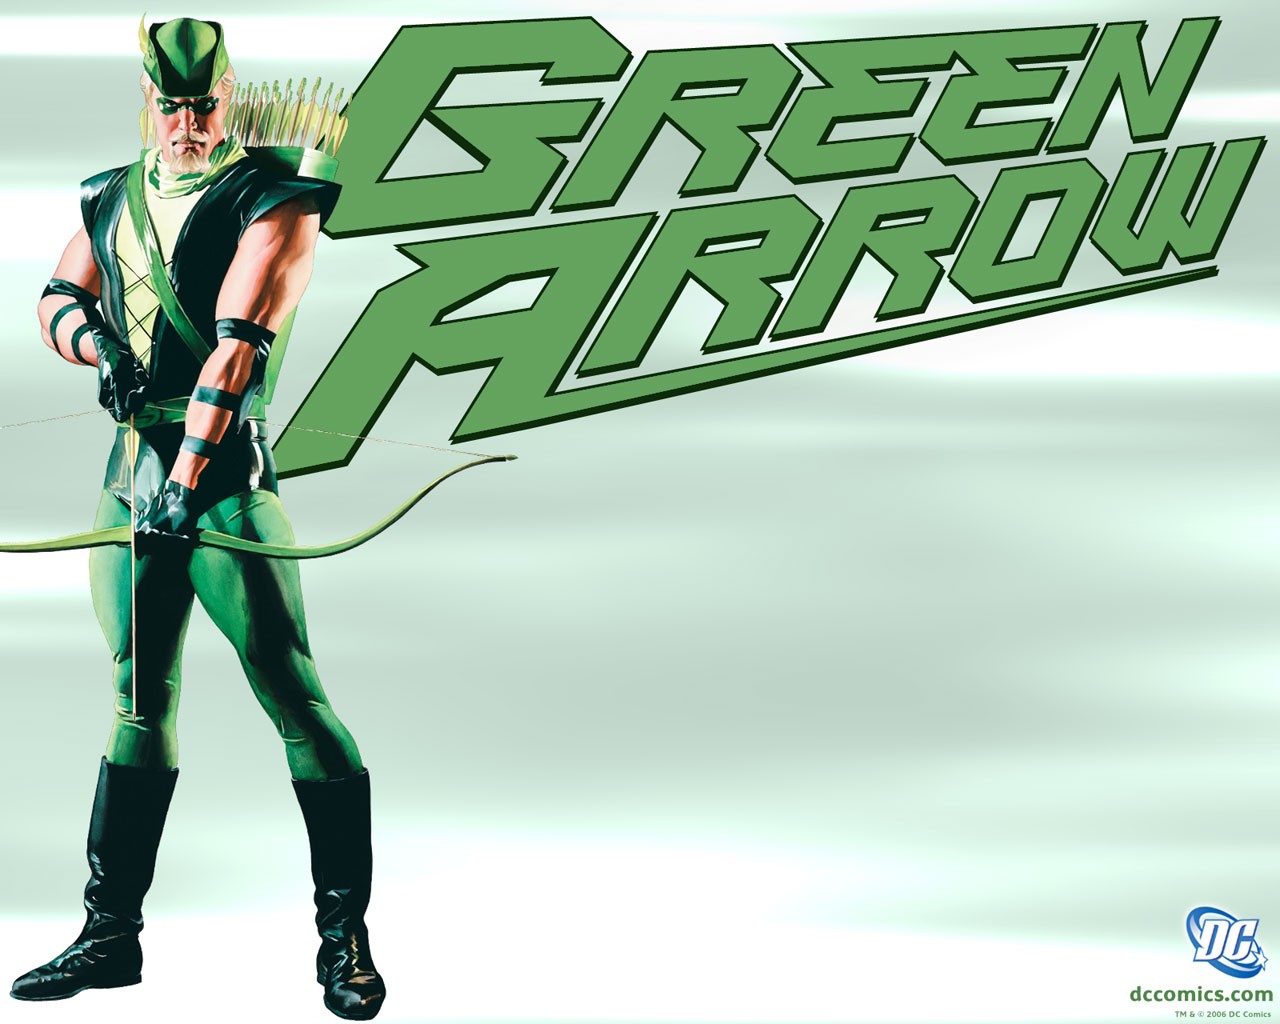 General 1280x1024 superhero bow Green Arrow Arrow (TV series) comics comic art bow and arrow men DC Comics